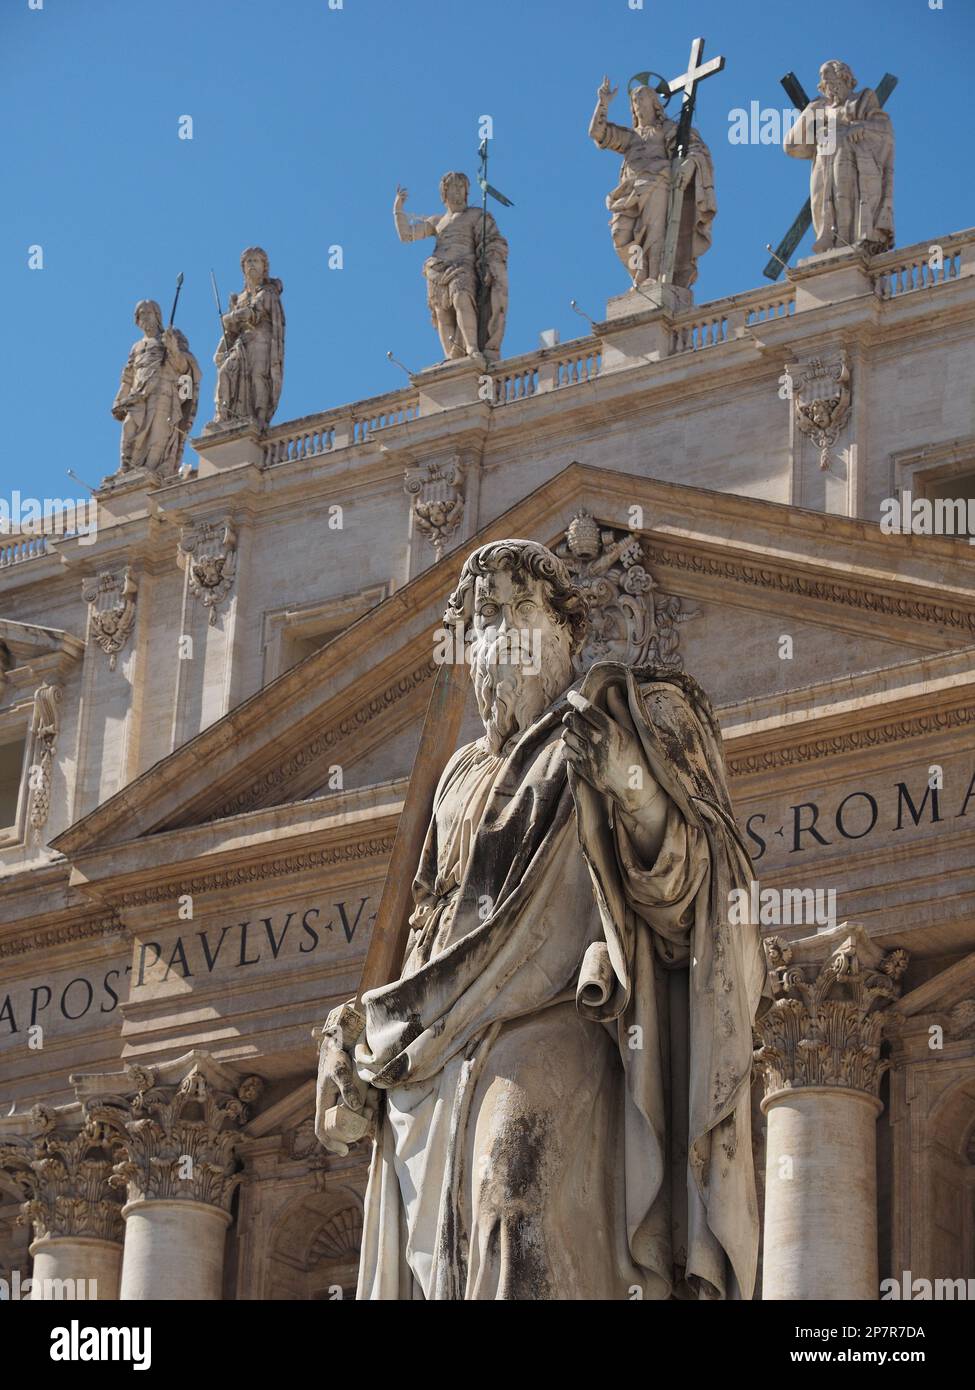 Dettagli architettonici e sculture di fronte e in cima alla Basilica di San Pietro nella Città del Vaticano, il Vaticano. Foto Stock